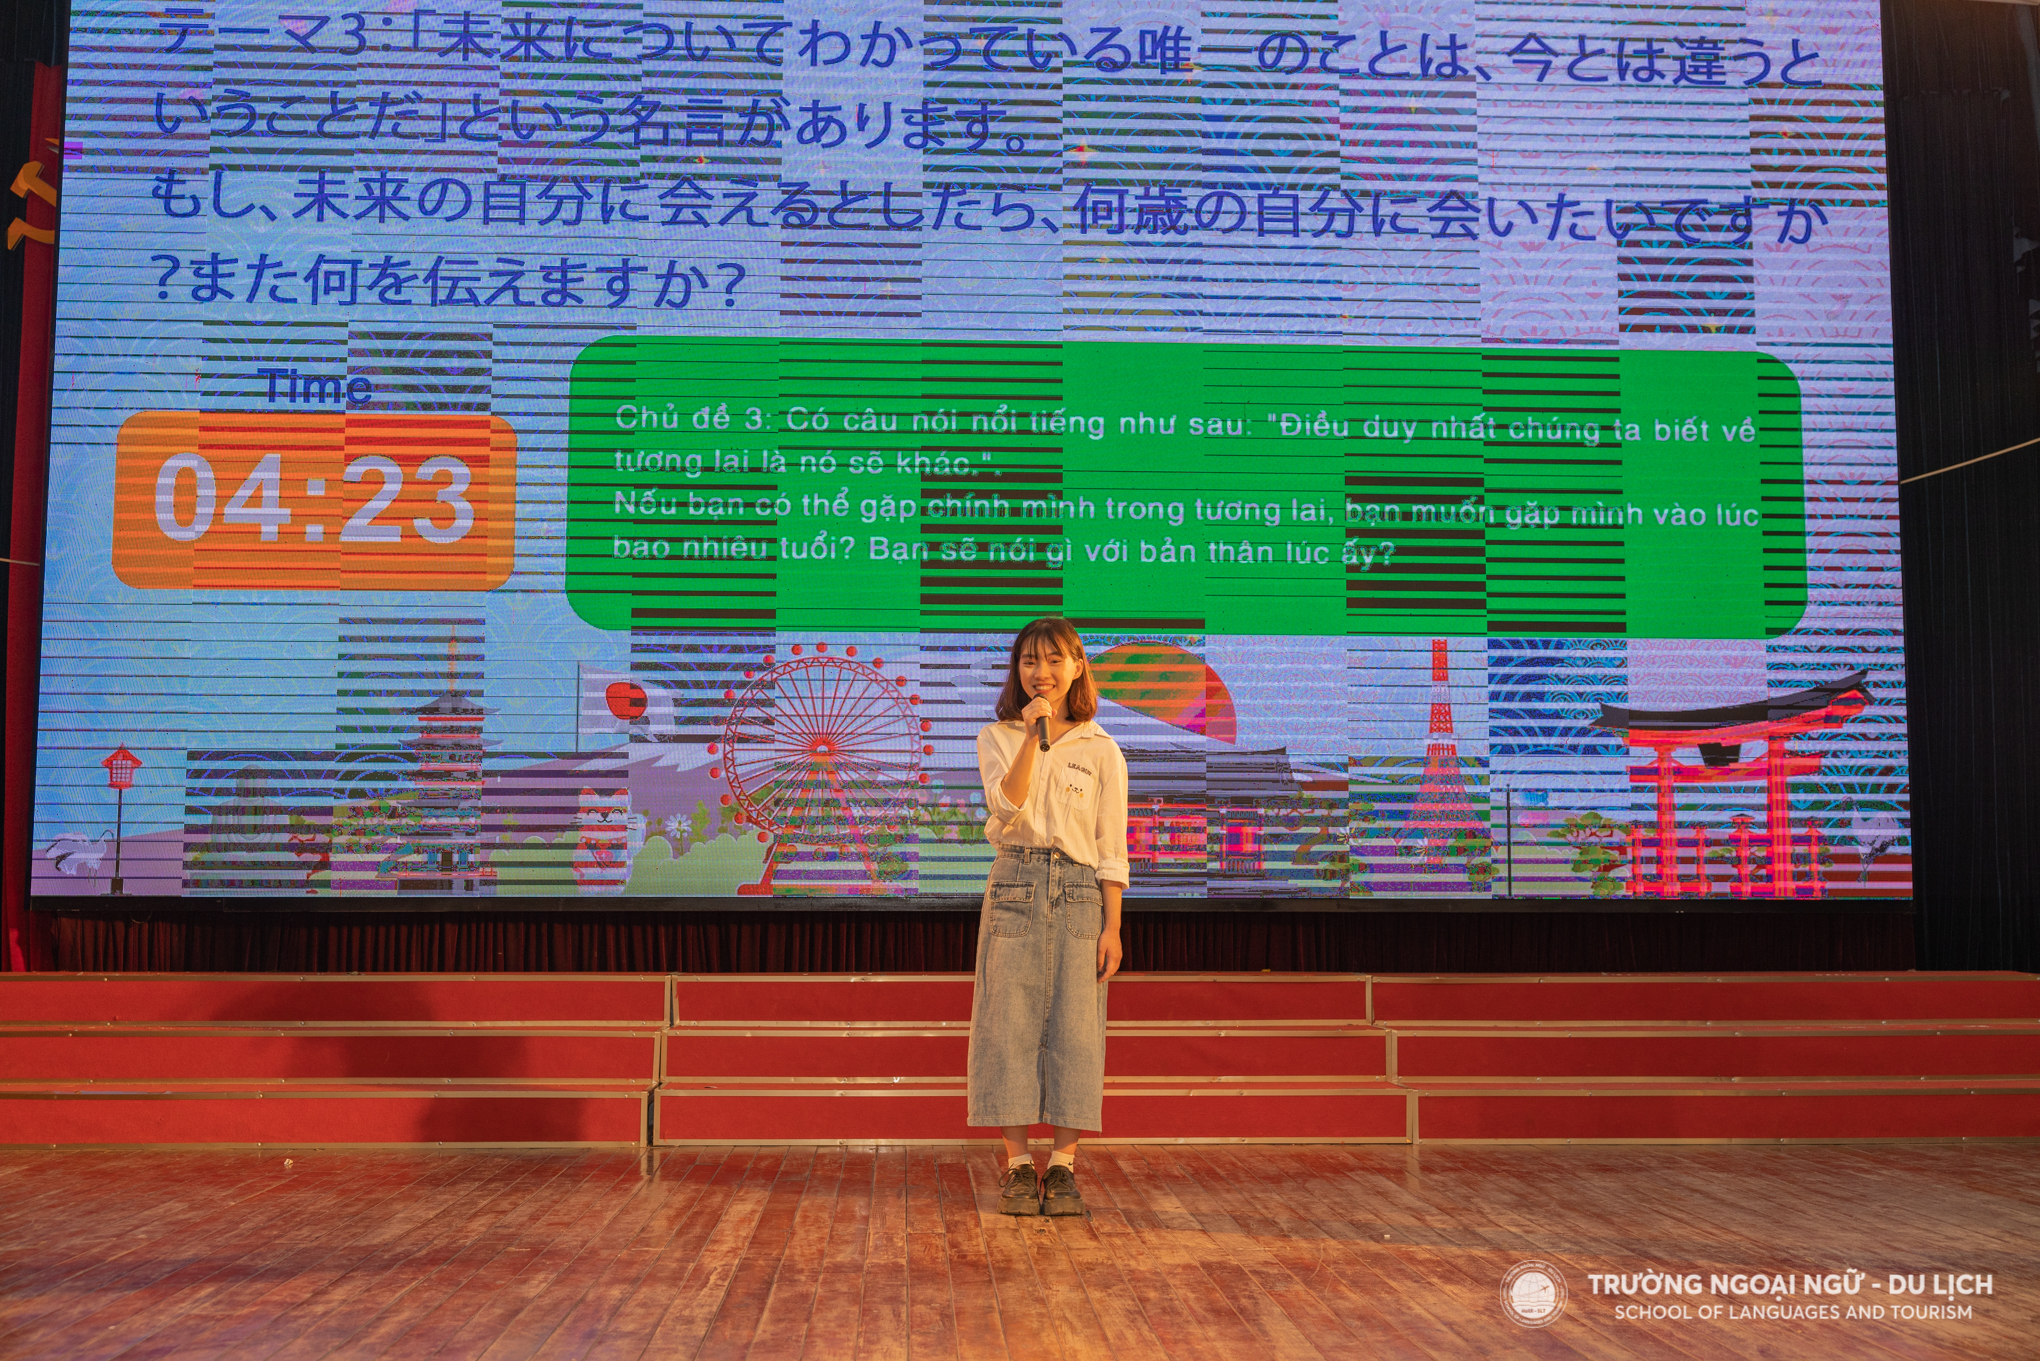 Sinh viên yêu thích tiếng Nhật 2023: Sân chơi trí tuệ, thông thái dành cho sinh viên các trường đại học, học viện thành phố Hà Nội